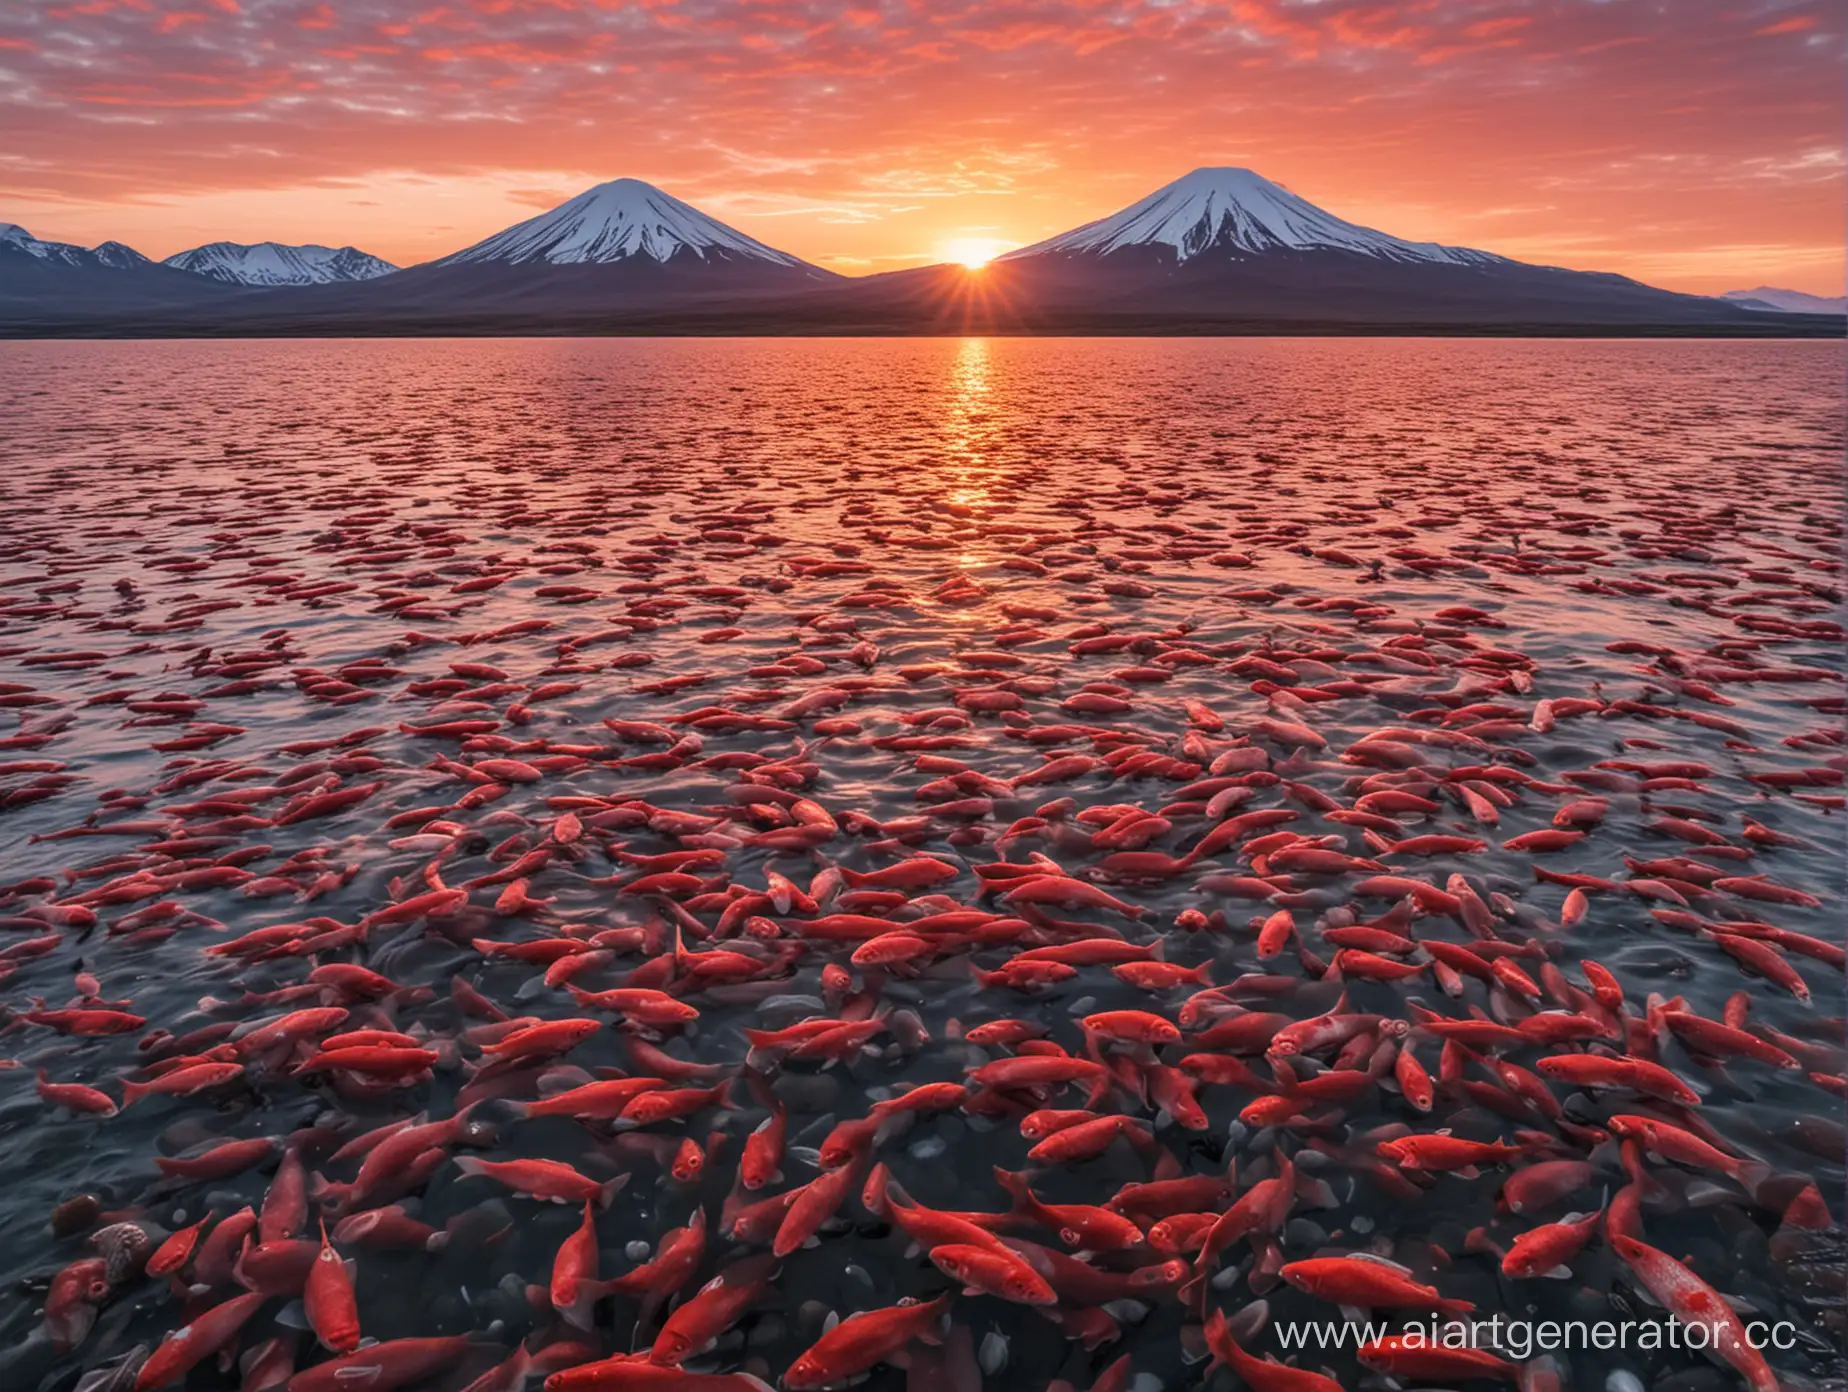 сгенерируй фото водоема Камчатки, в котором много красной рыбы, на фоне восхода солнца